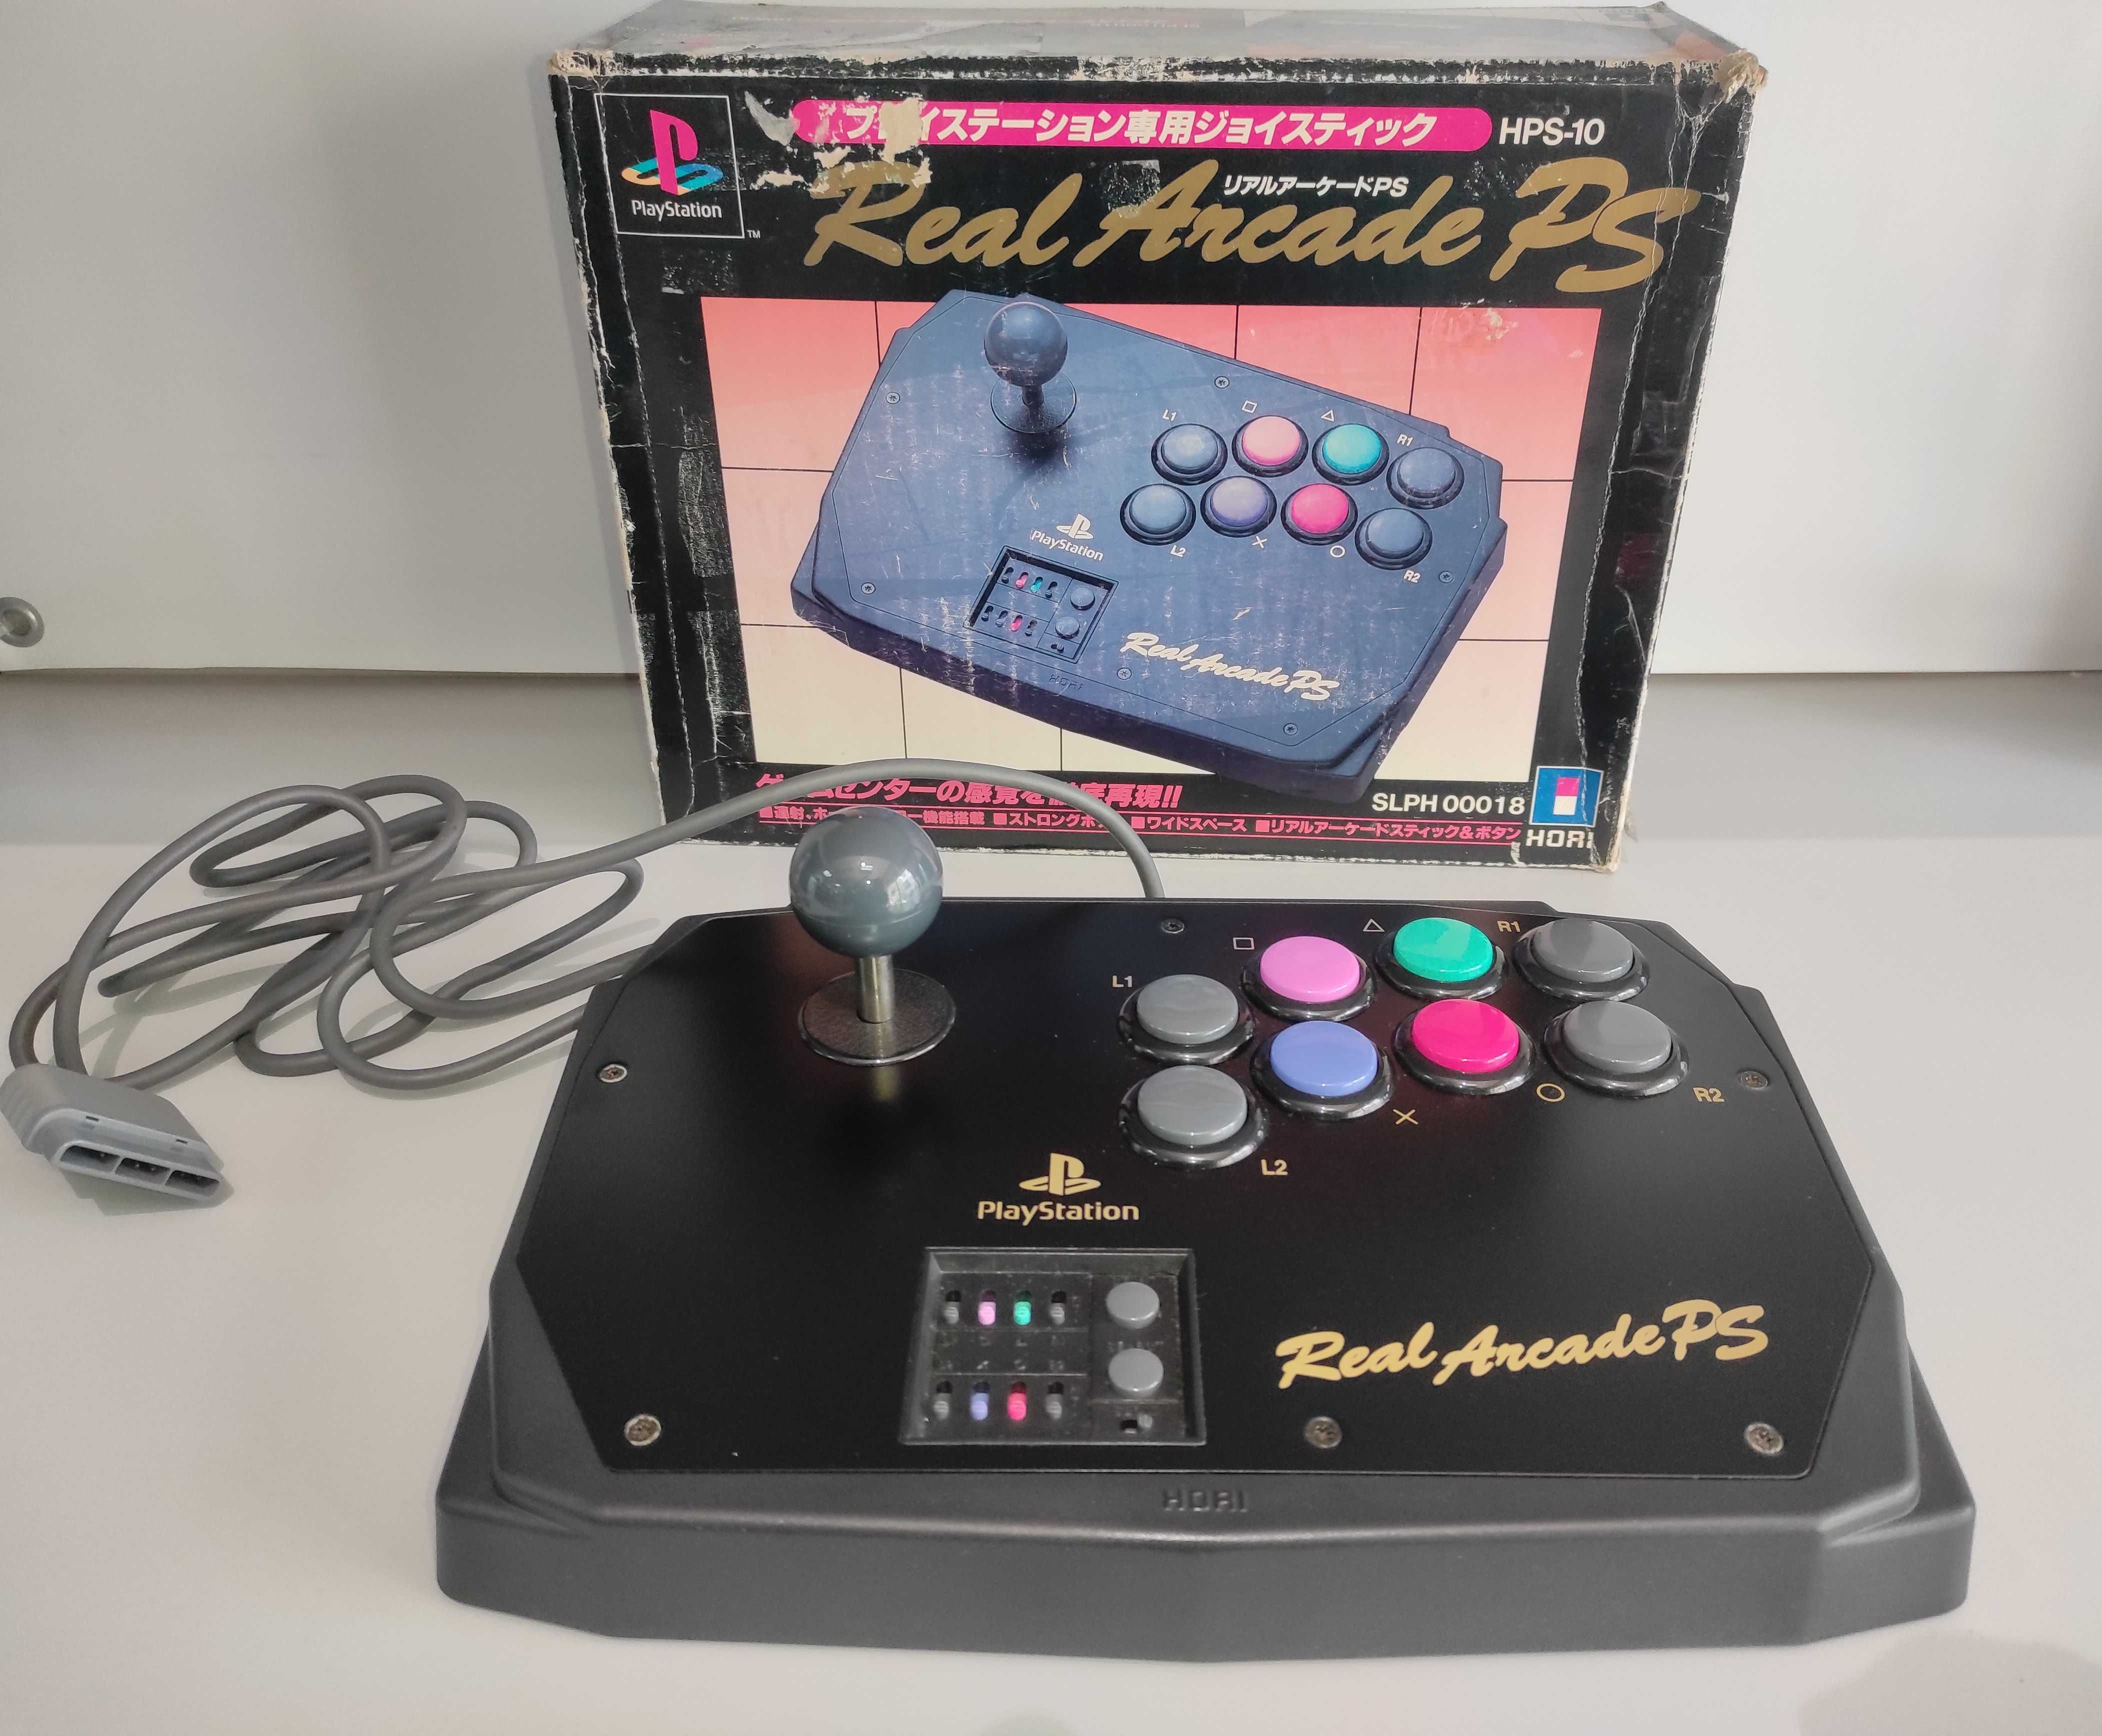 HORI Real Arcade PS Boxed HPS-10  Slph-00018